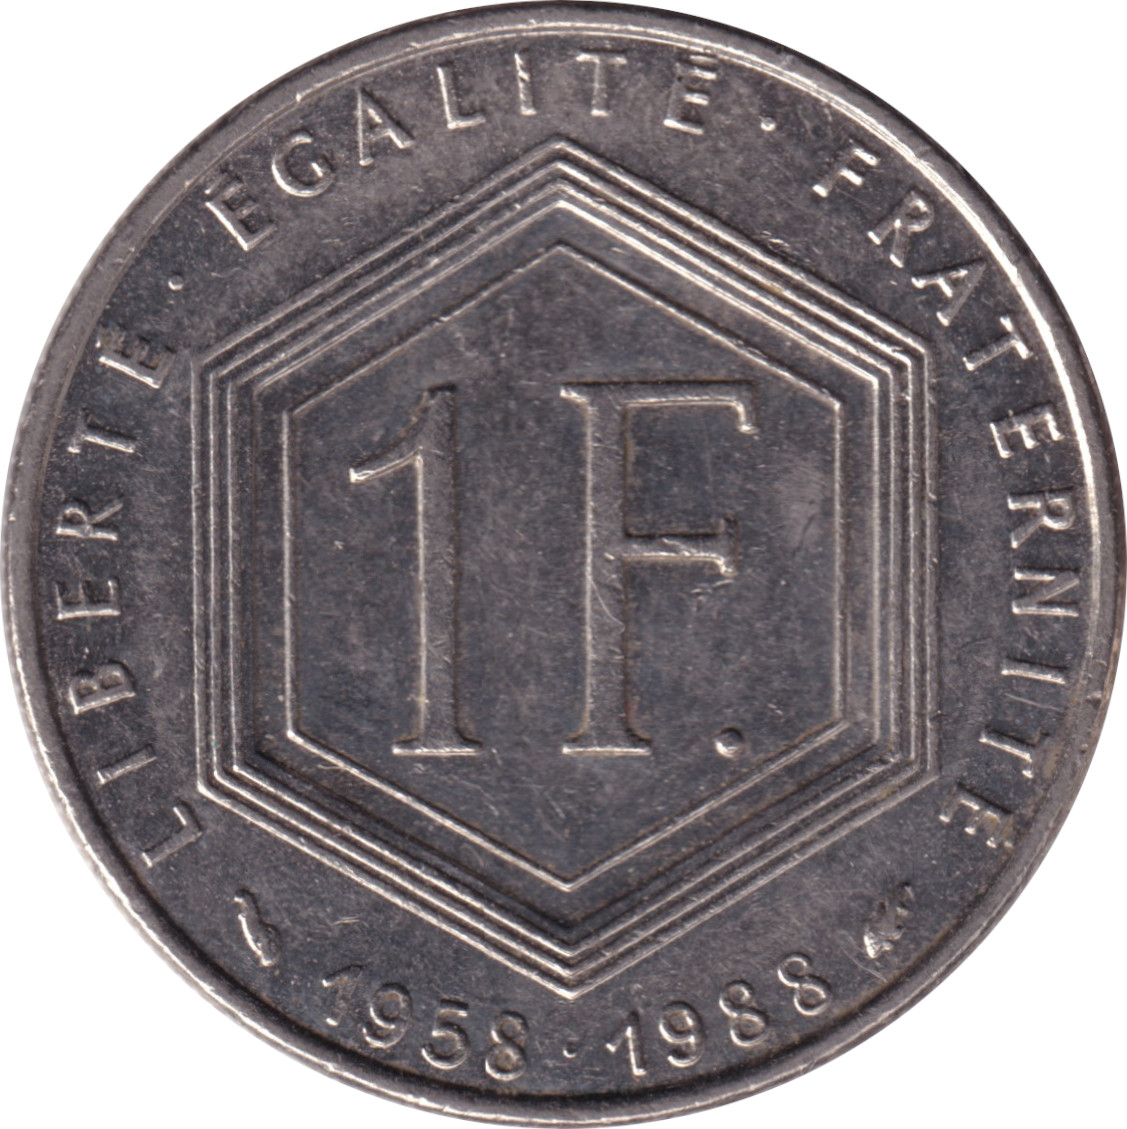 1 franc - Charles De Gaulle - 40 years - Légère